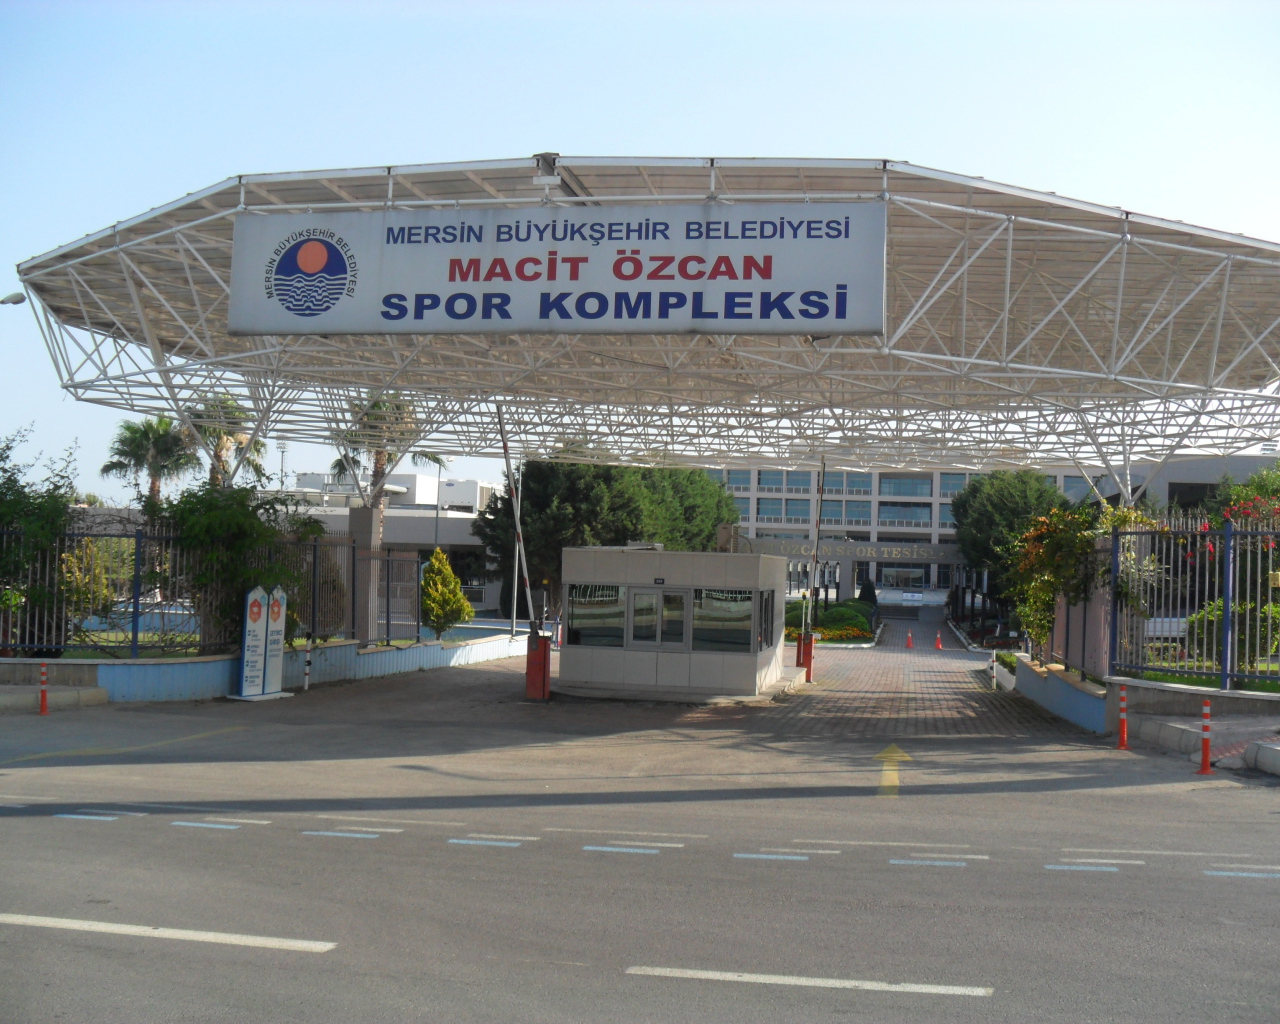 Спорткомплекс в Мерсине, Турция